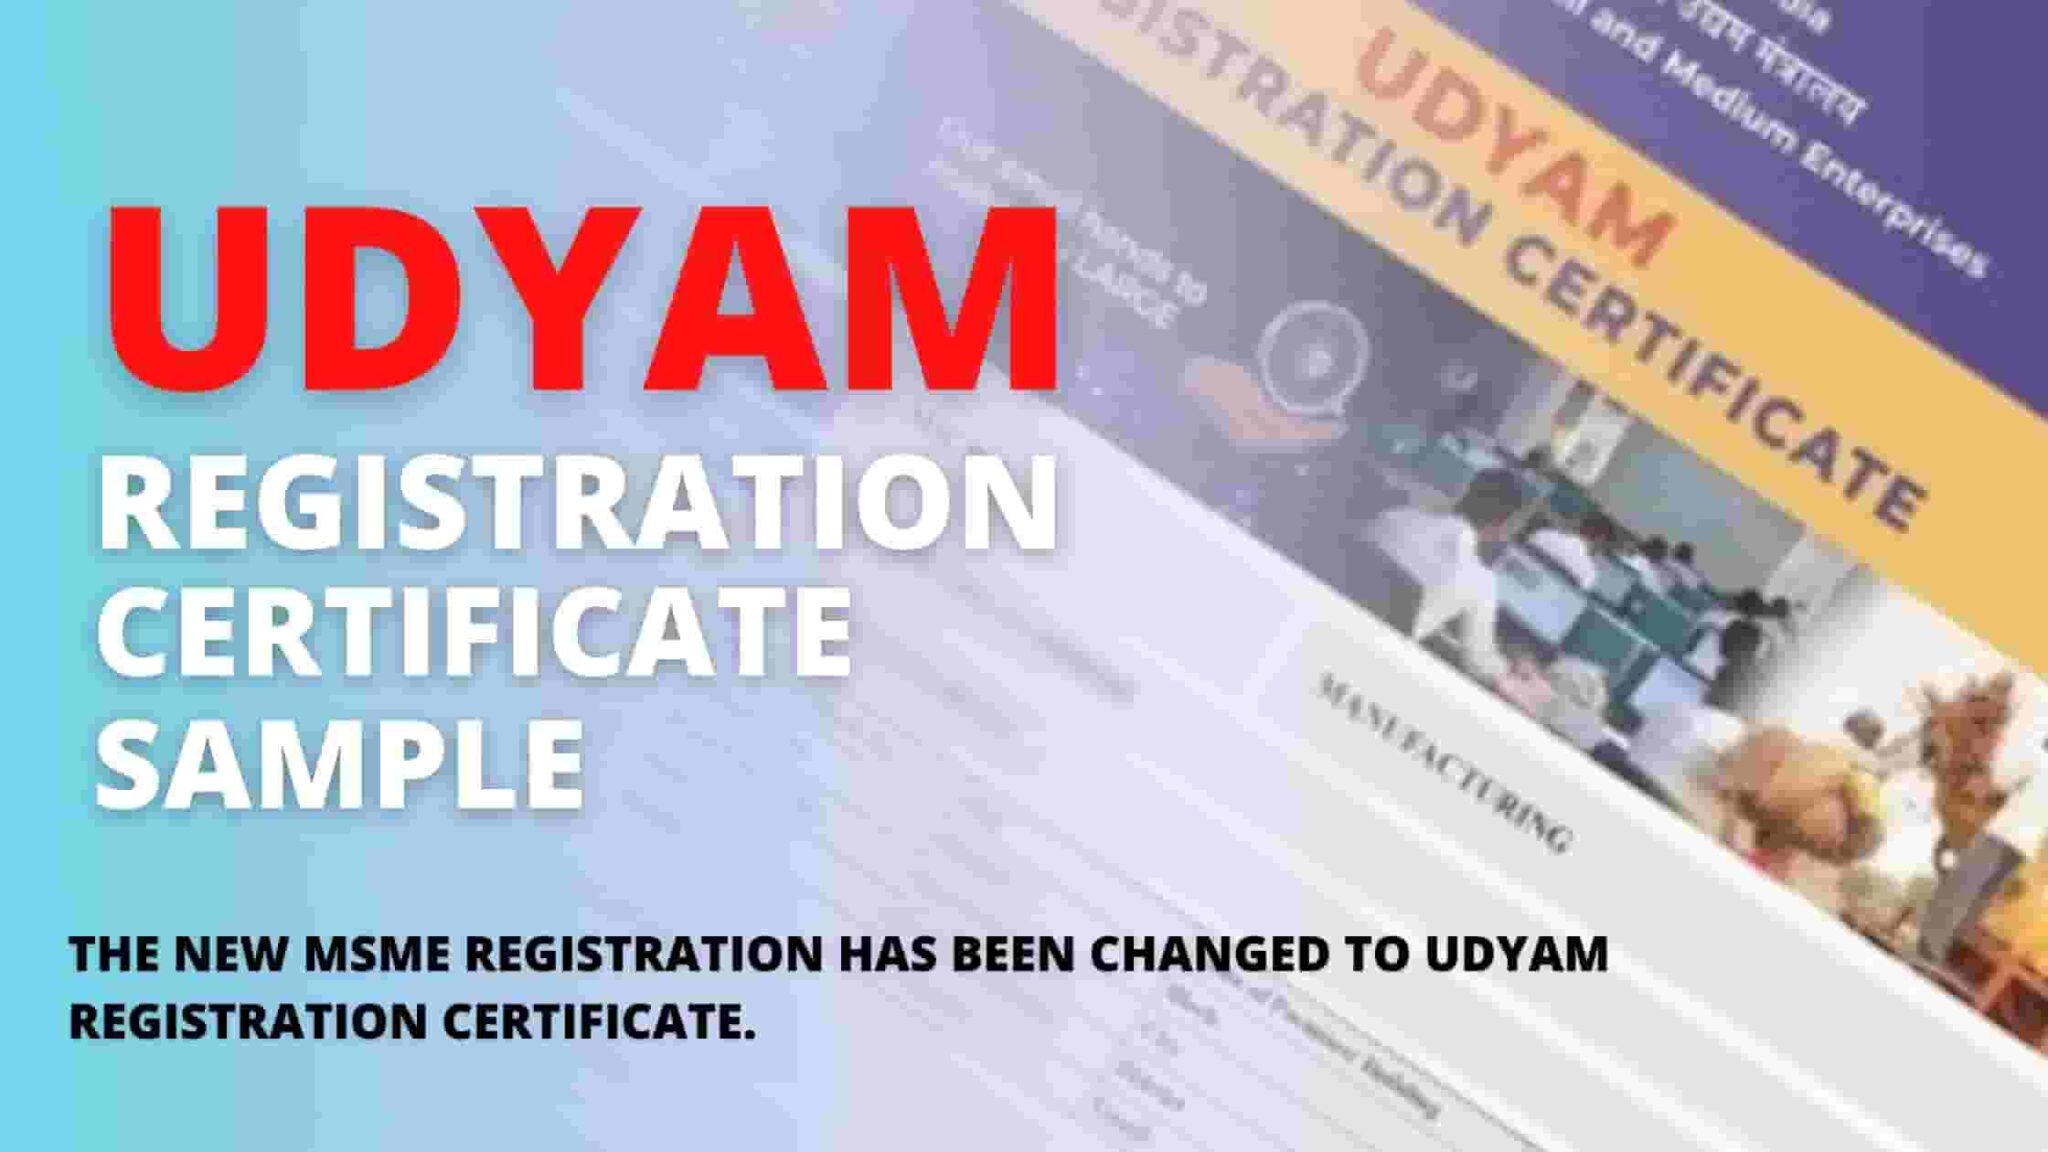 Udyam Registration Certificate Sample MSME UDYAM REGISTRATION